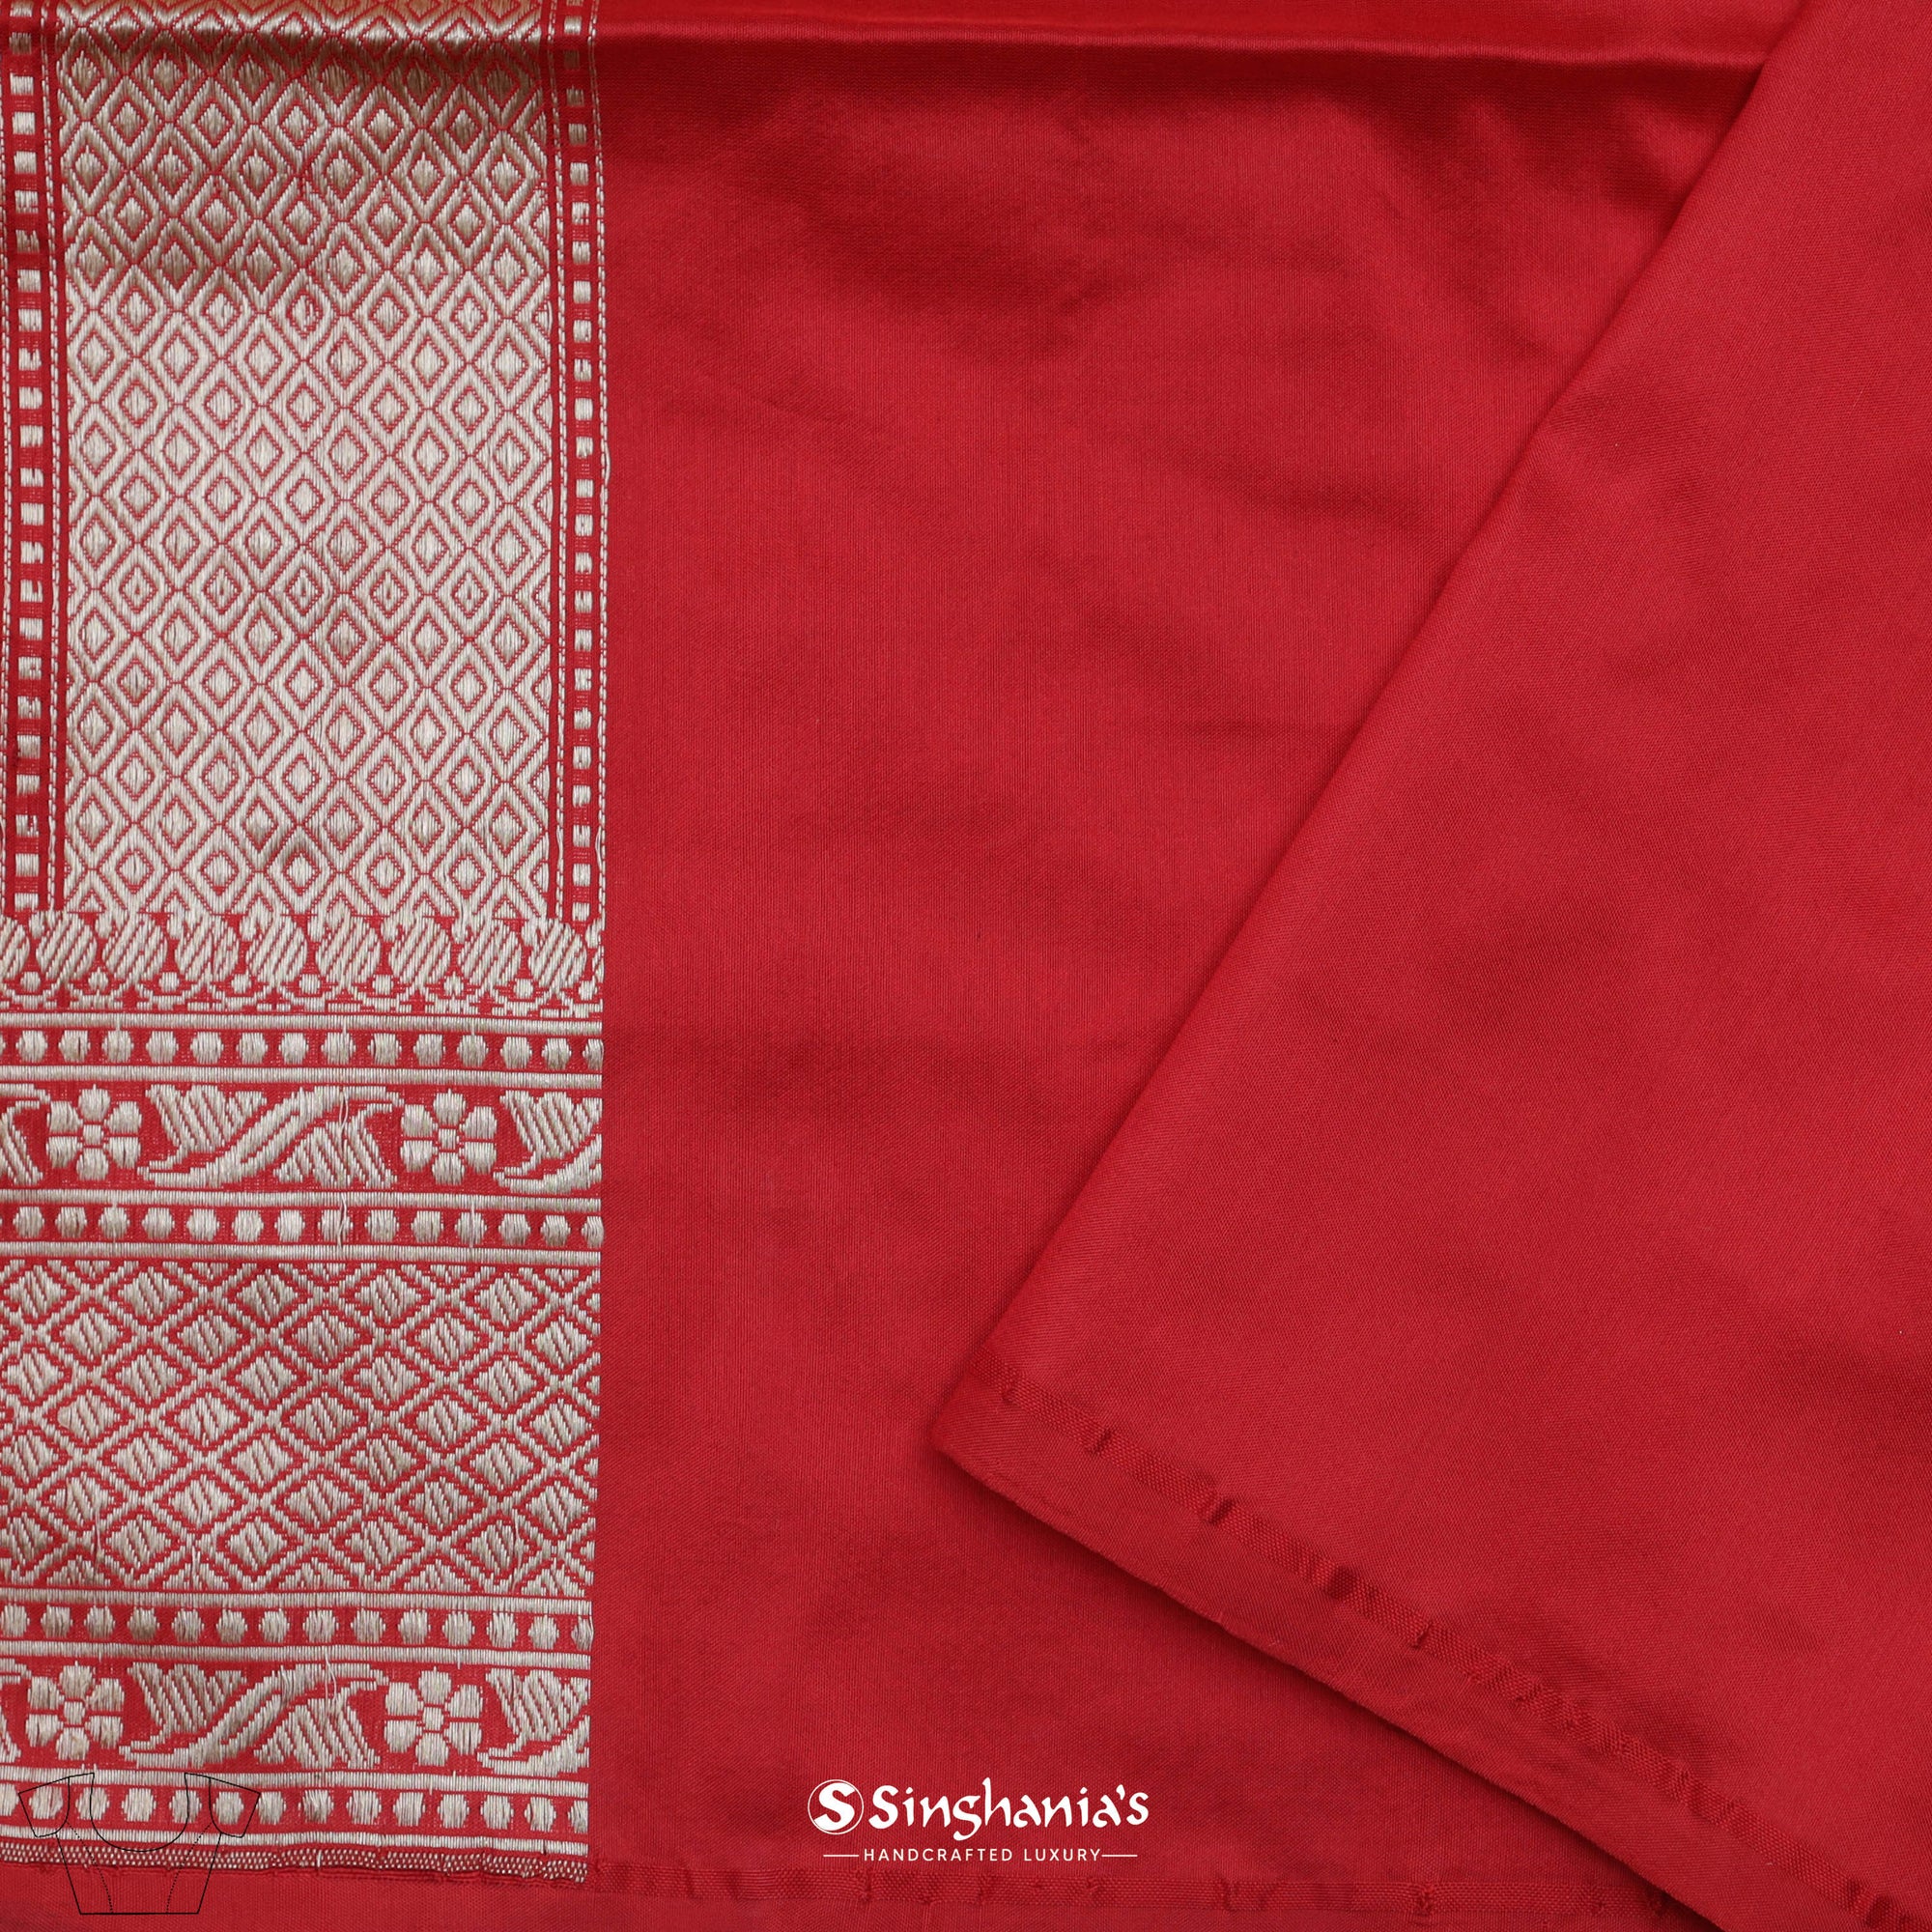 Persian Red Banarasi Silk Saree With Flora-Fauna Weaving